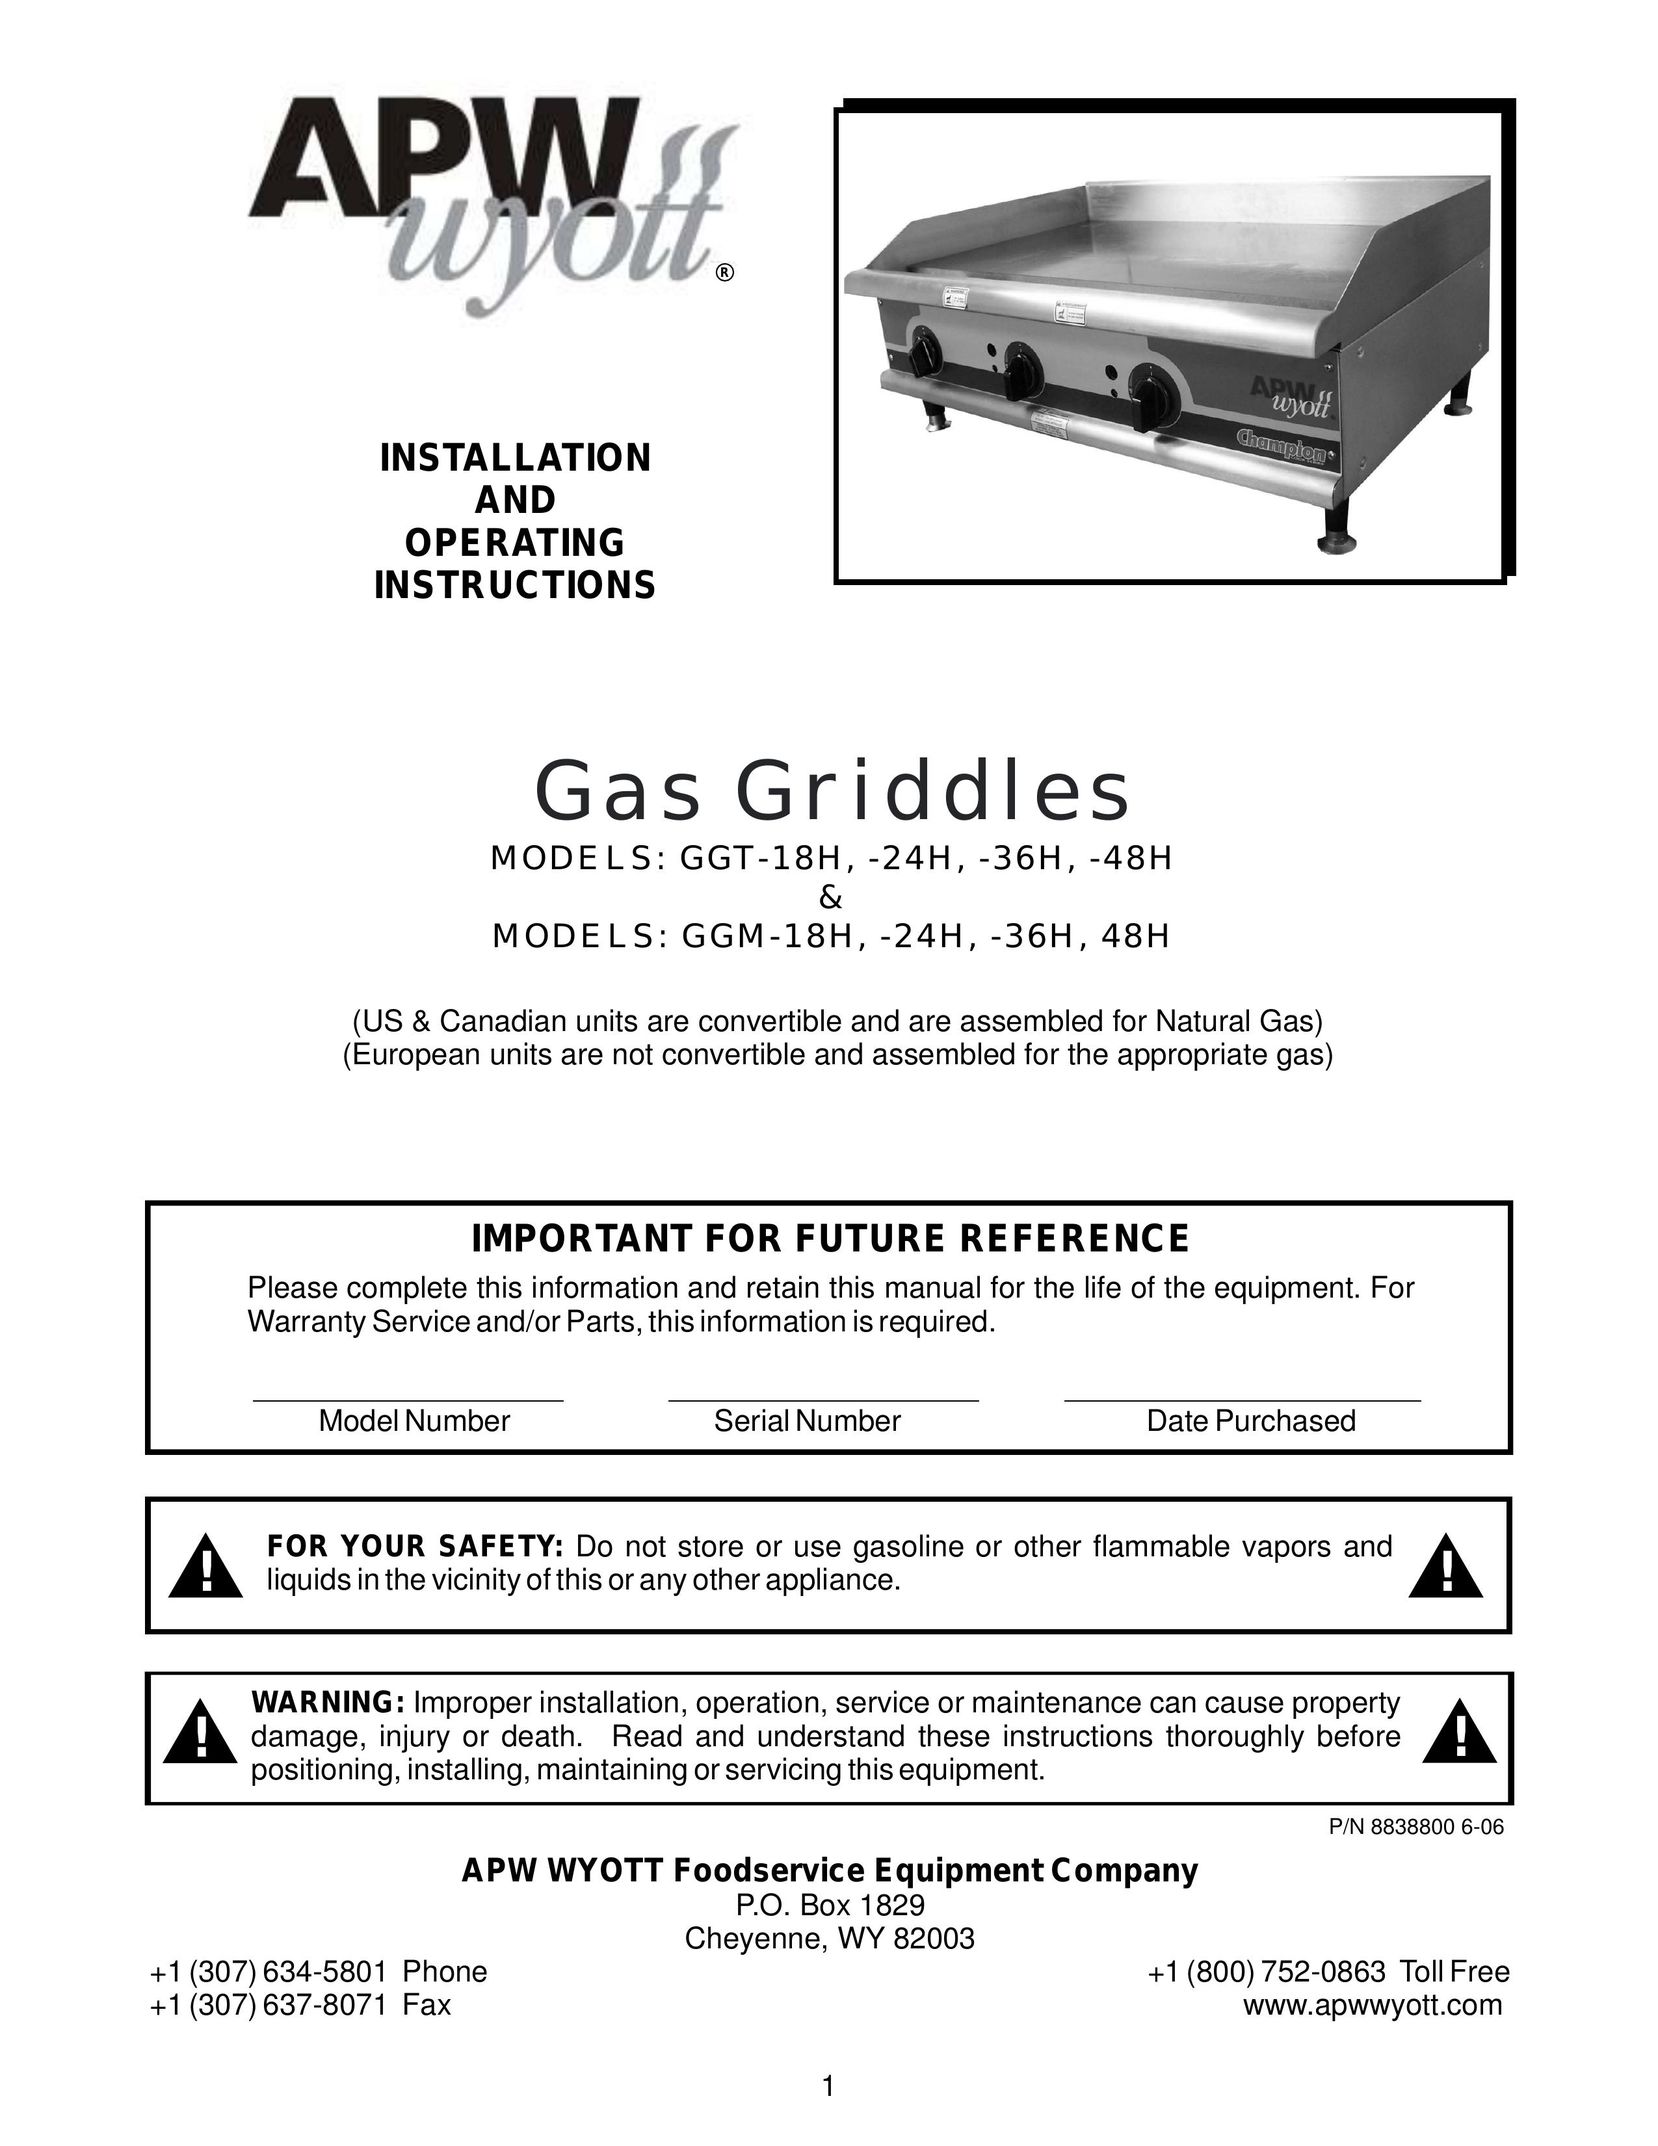 APW Wyott GGM-24H Griddle User Manual